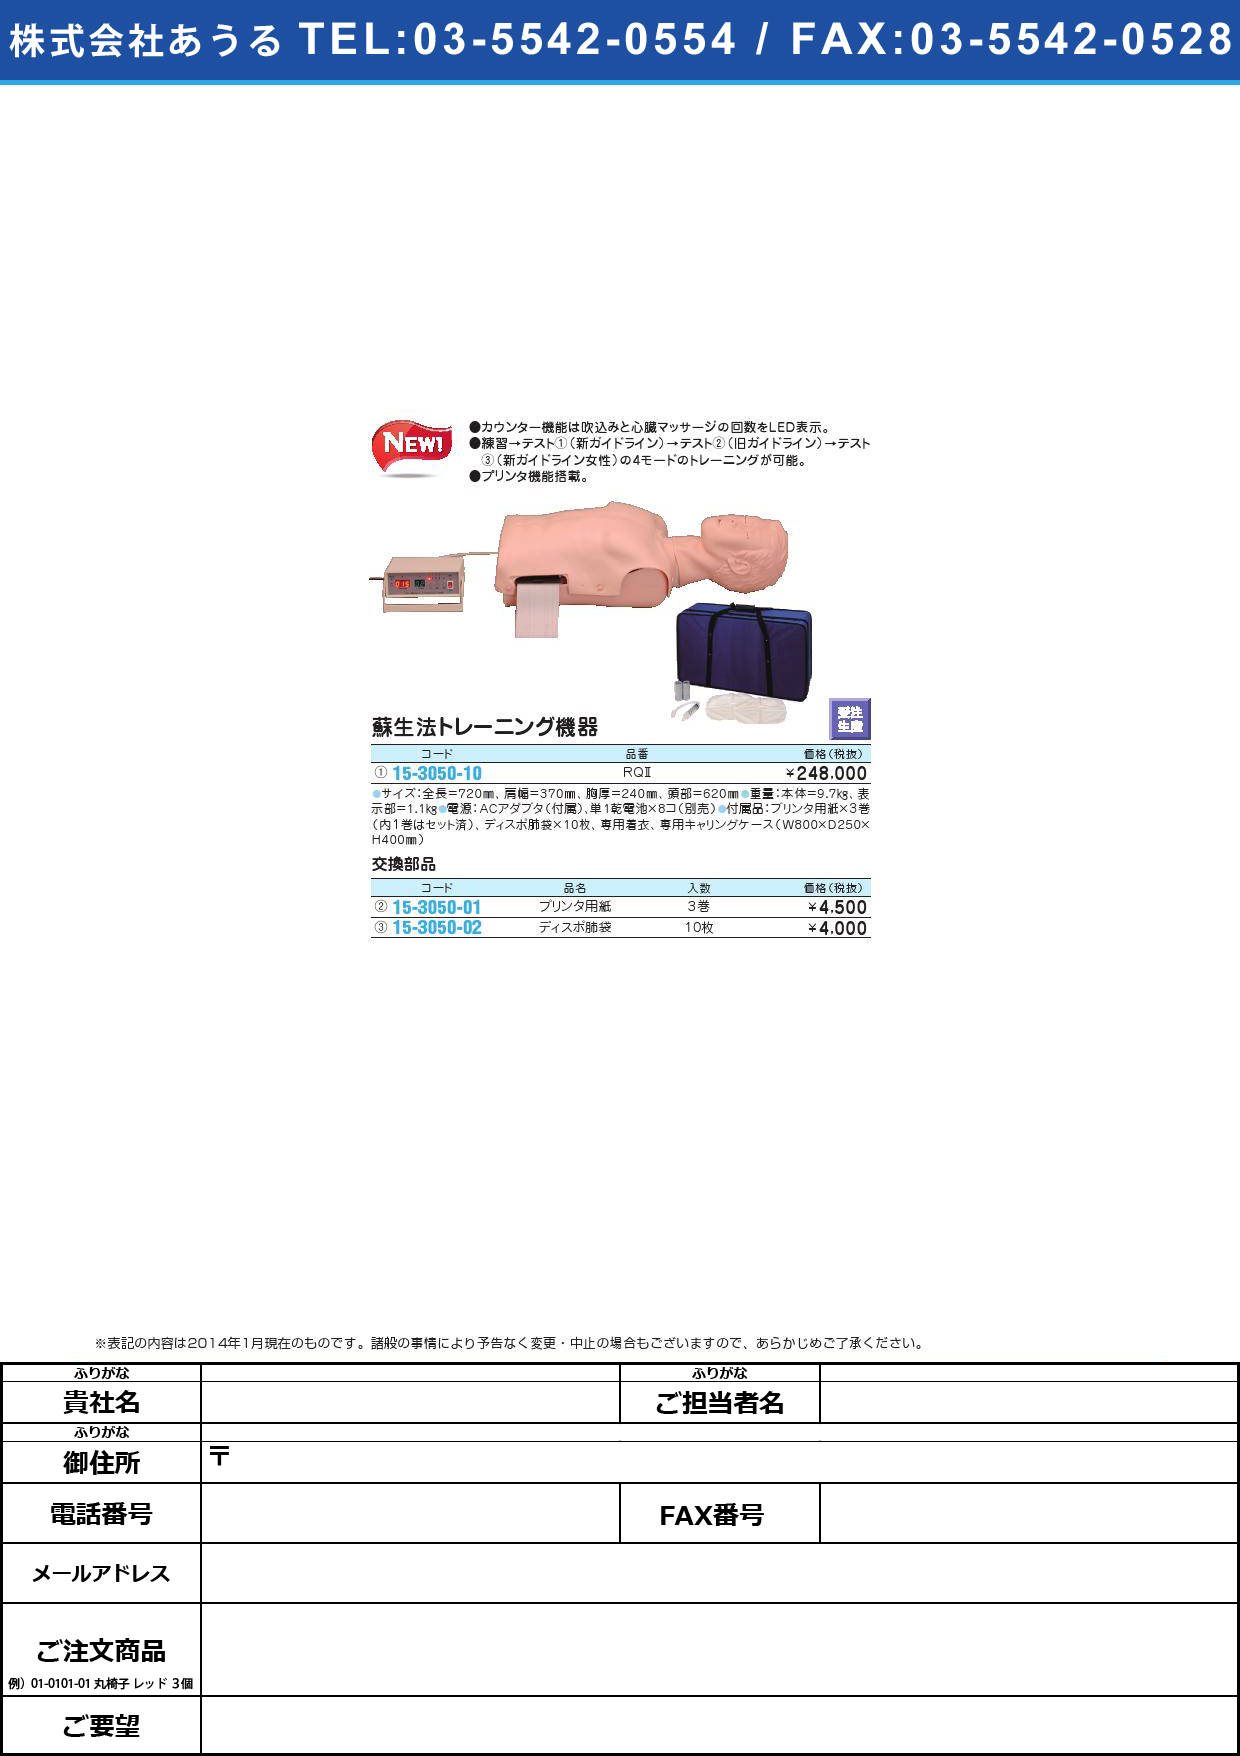 蘇生法トレーニング機器用プリンタ用紙 ﾌﾟﾘﾝﾀﾖｳｼ(15-3050-01)ROP(3ｶﾝｲﾘ)